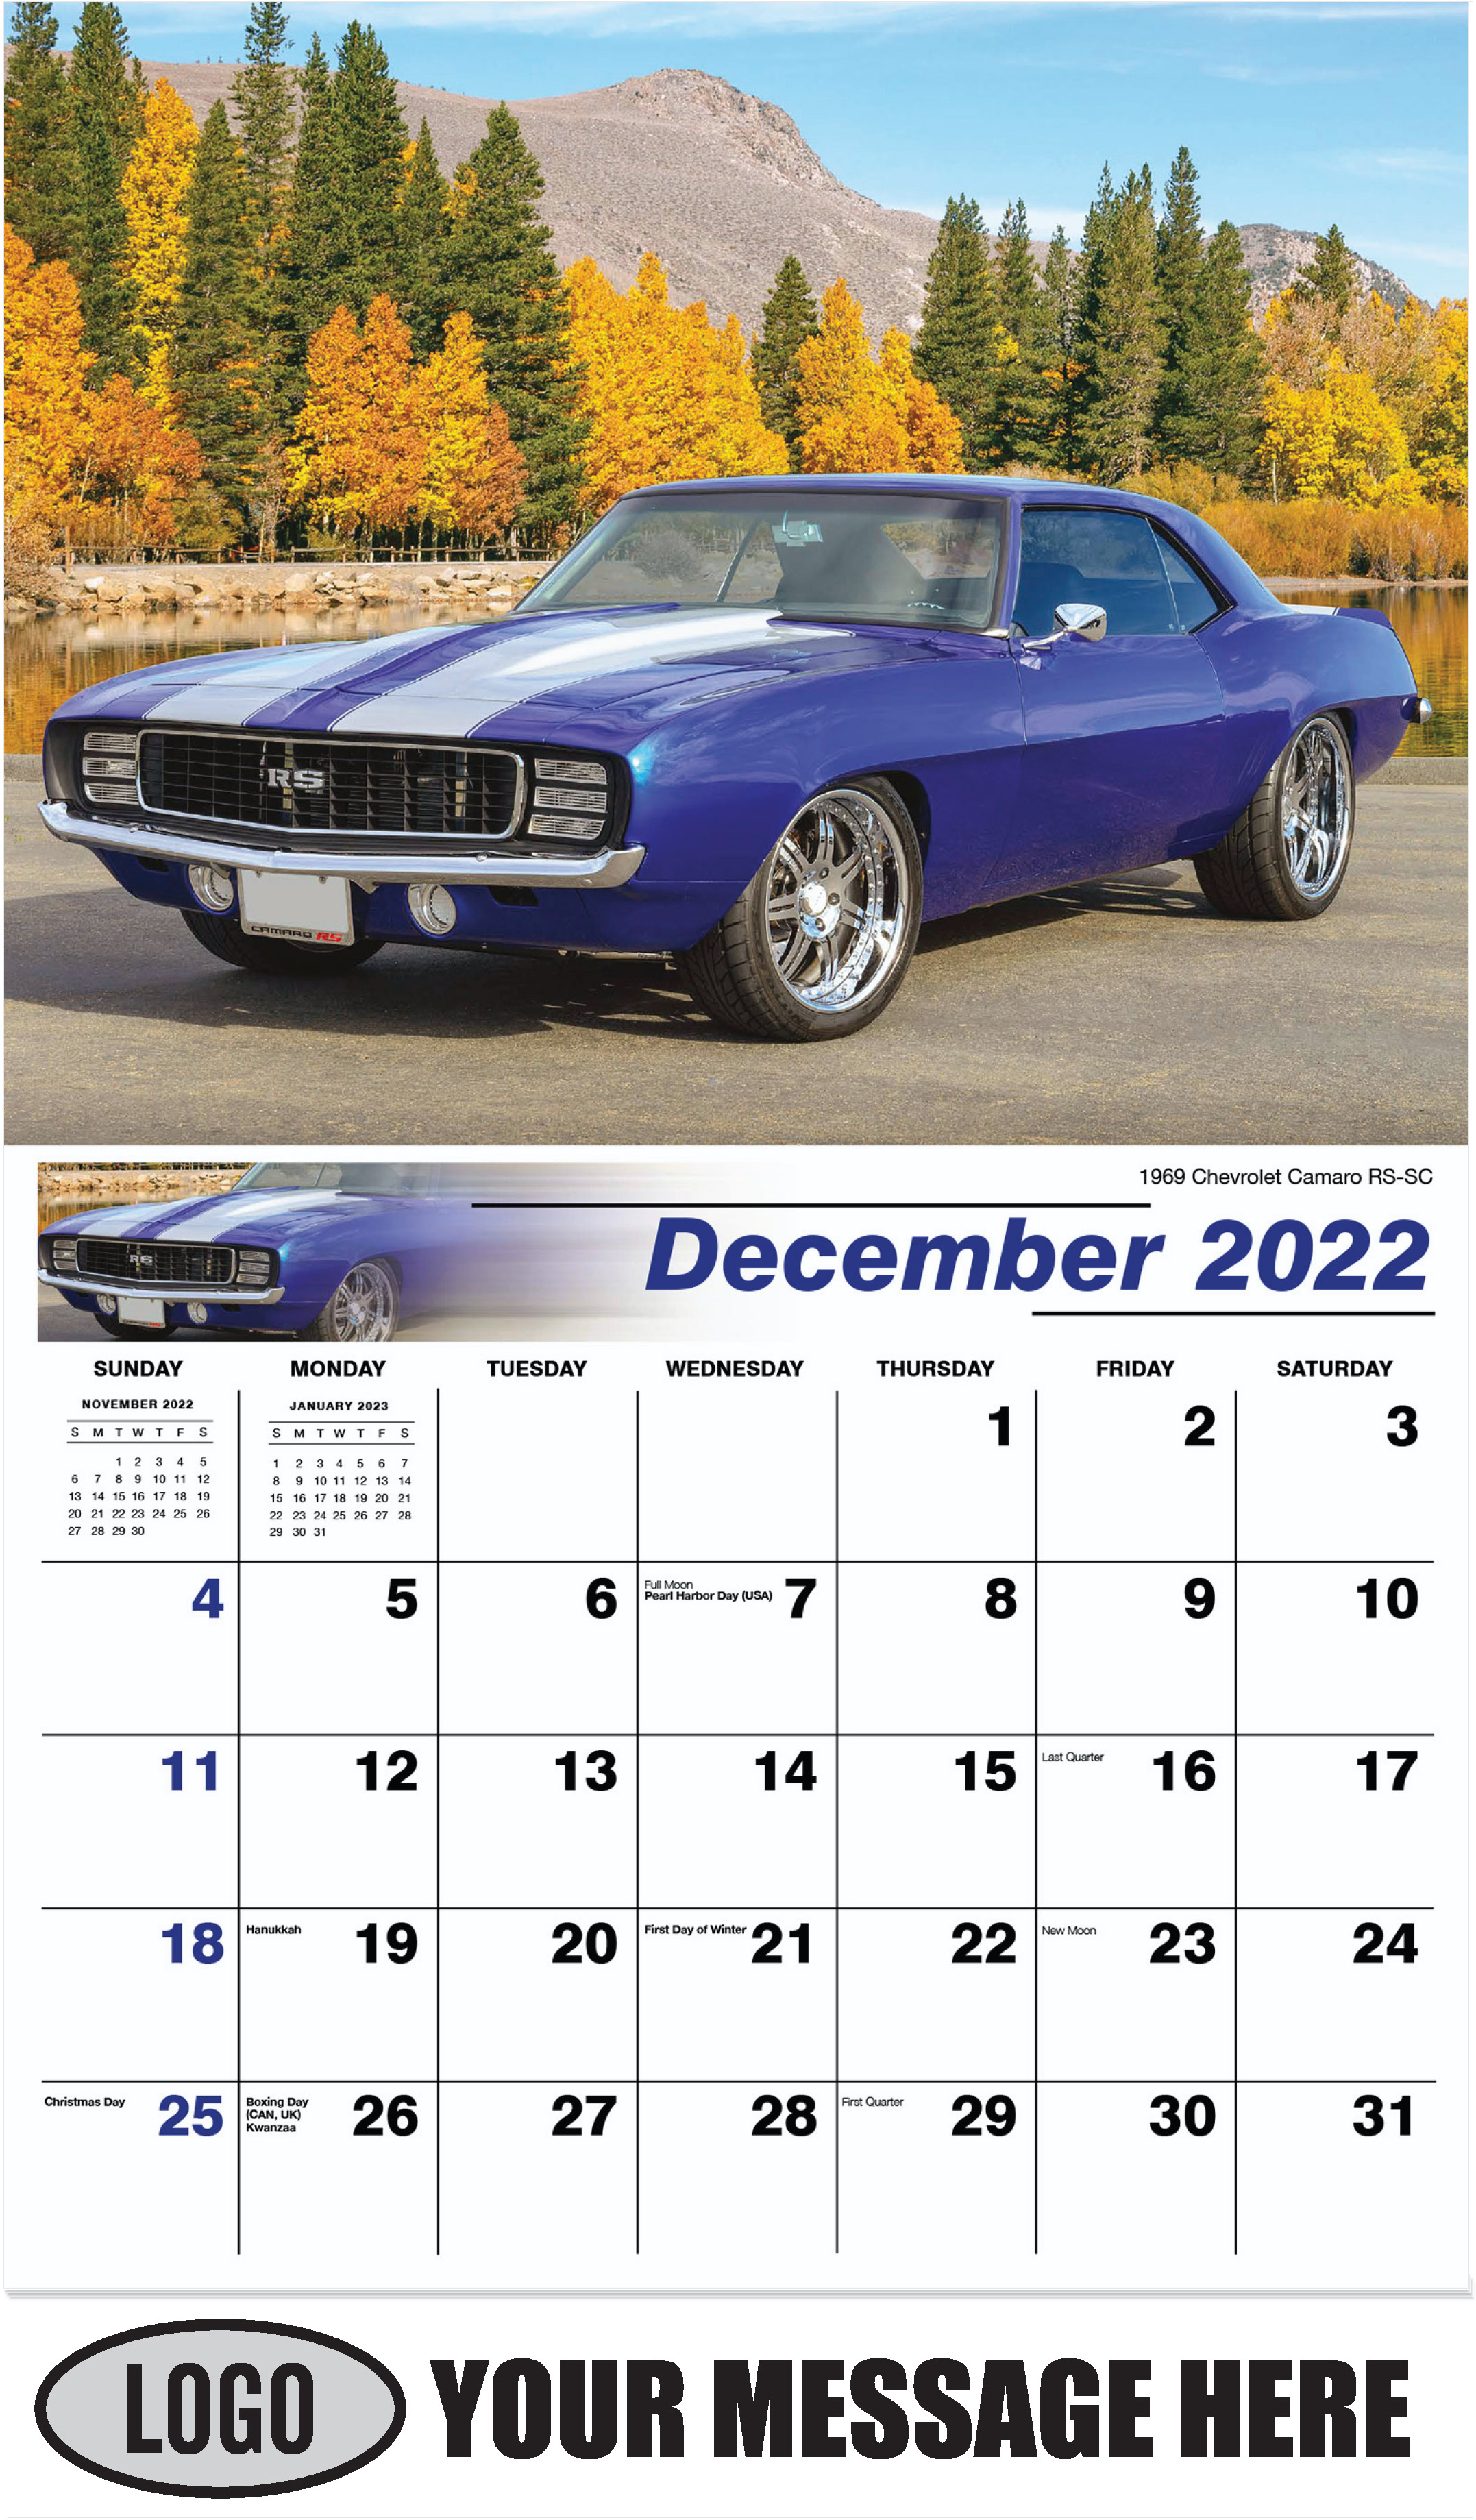 1969 Chevrolet Camaro RS-SC - December 2022 - GM Classics 2023 Promotional Calendar